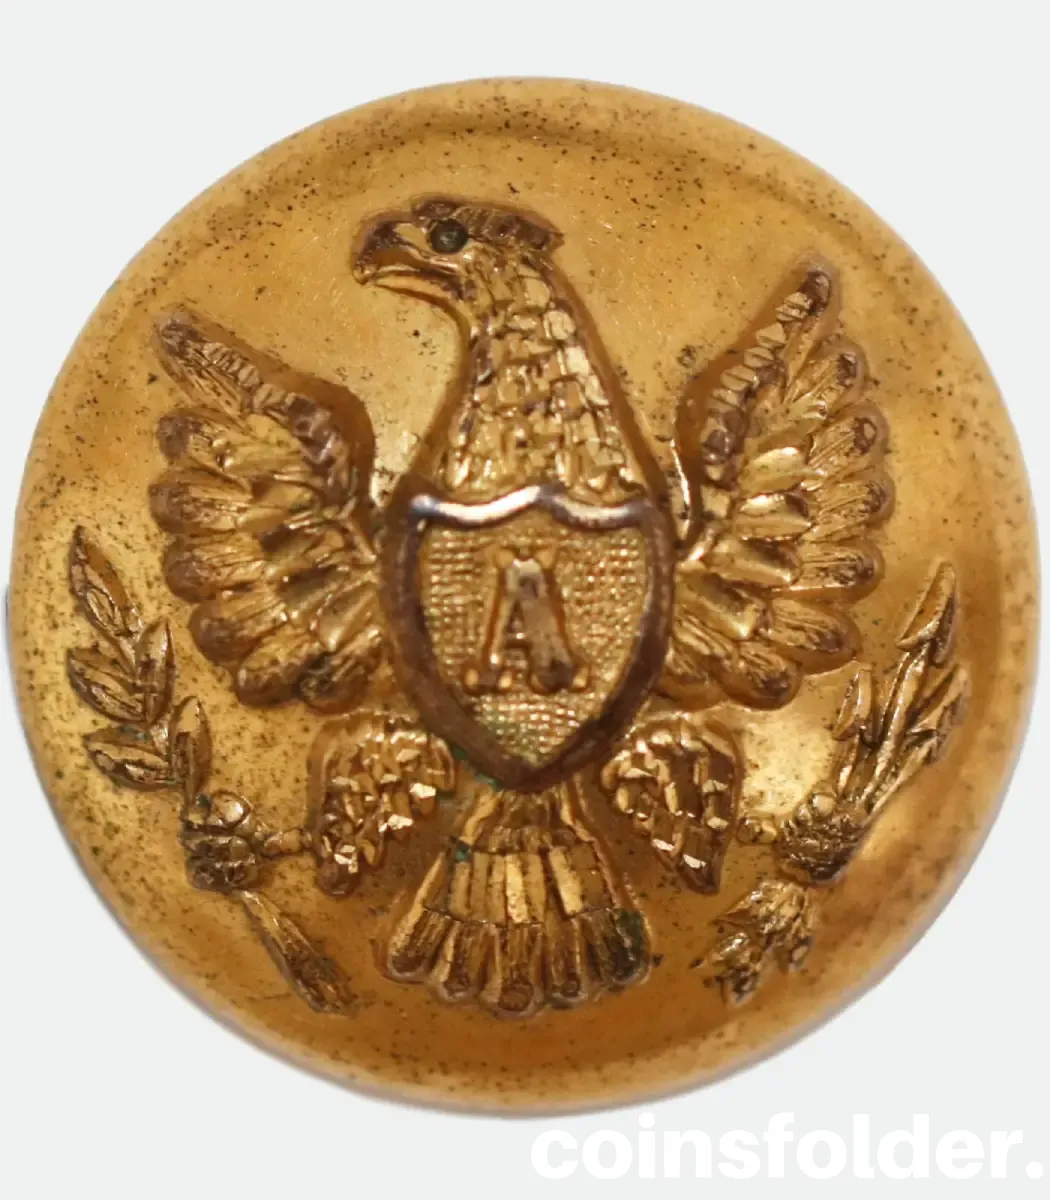 Civil War Era US Artillery Button, Eagle with "A" by D. Evans & Co